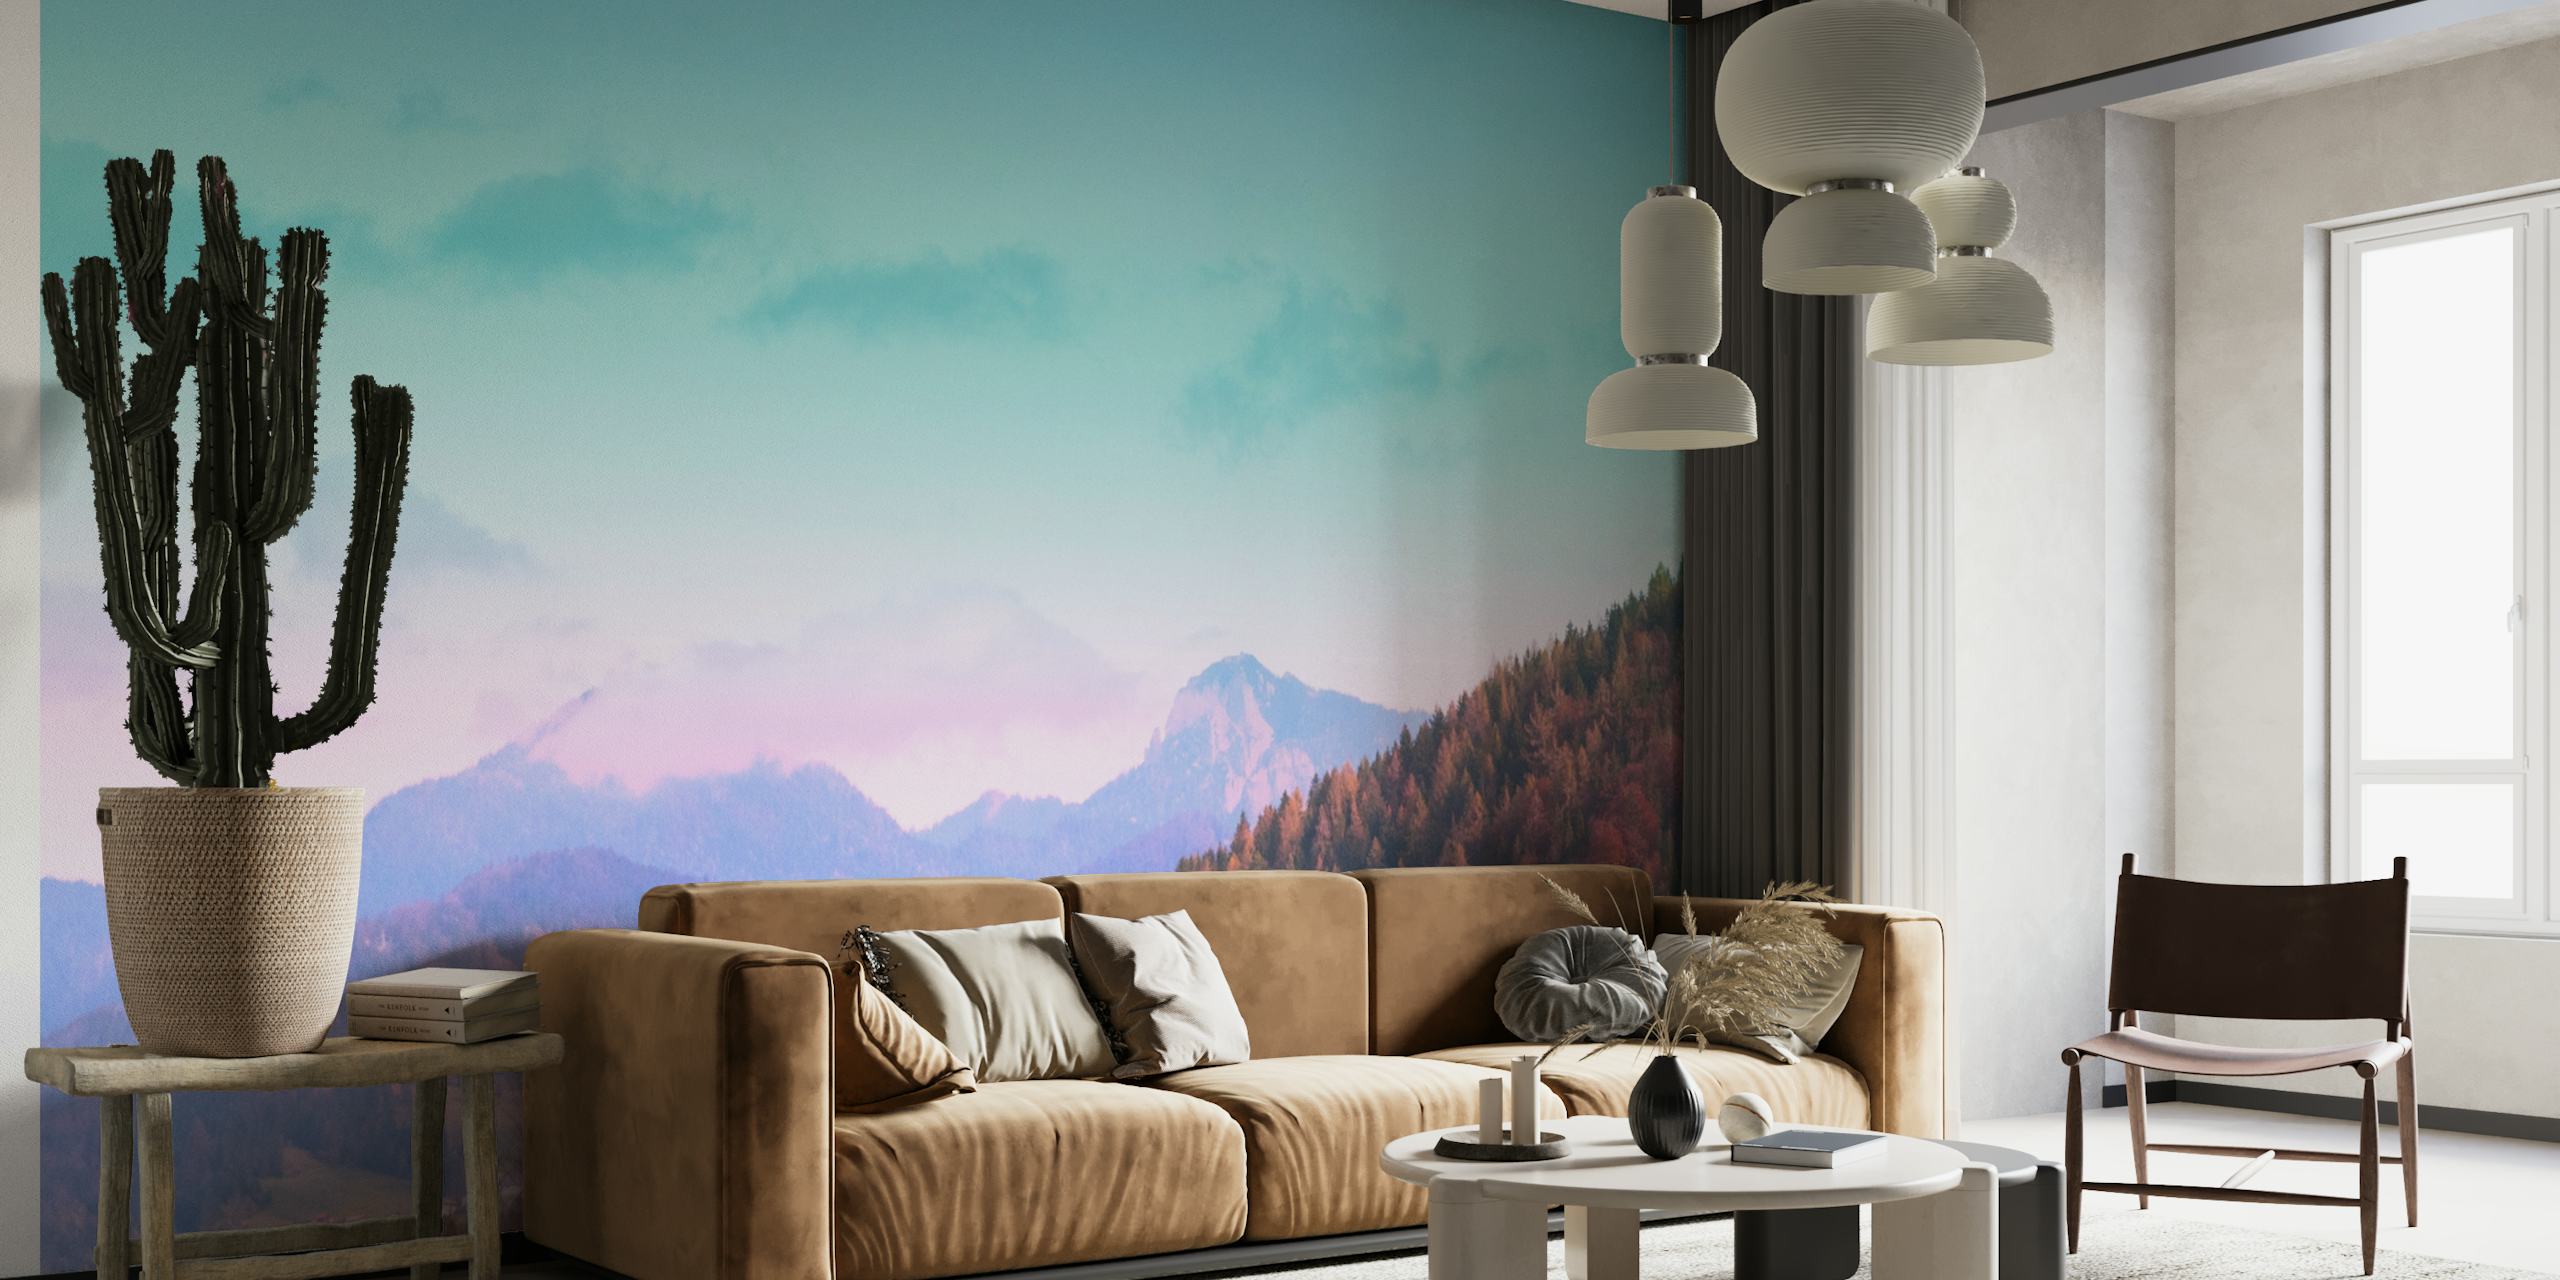 Dreamy Mountain Landscape 1 wallpaper